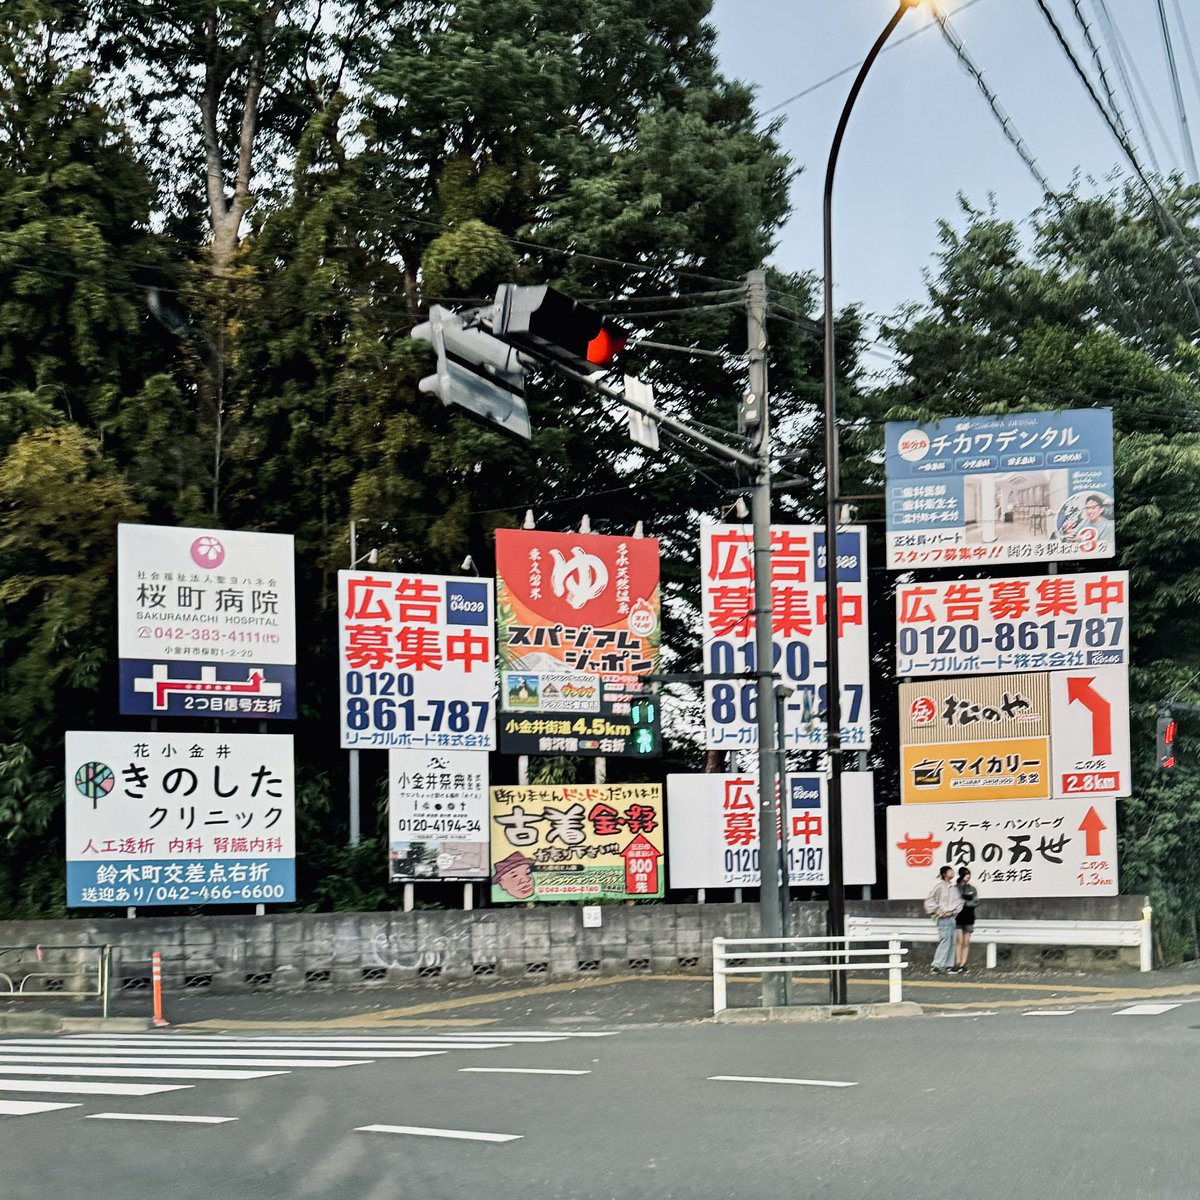 混沌とした看板群。1番目立つ広告募集中のパネルという皮肉。 @ 東京 小平市

A chaotic collection of signs. The most prominent is ironically a panel seeking advertisements. @ Kodaira City, Tokyo